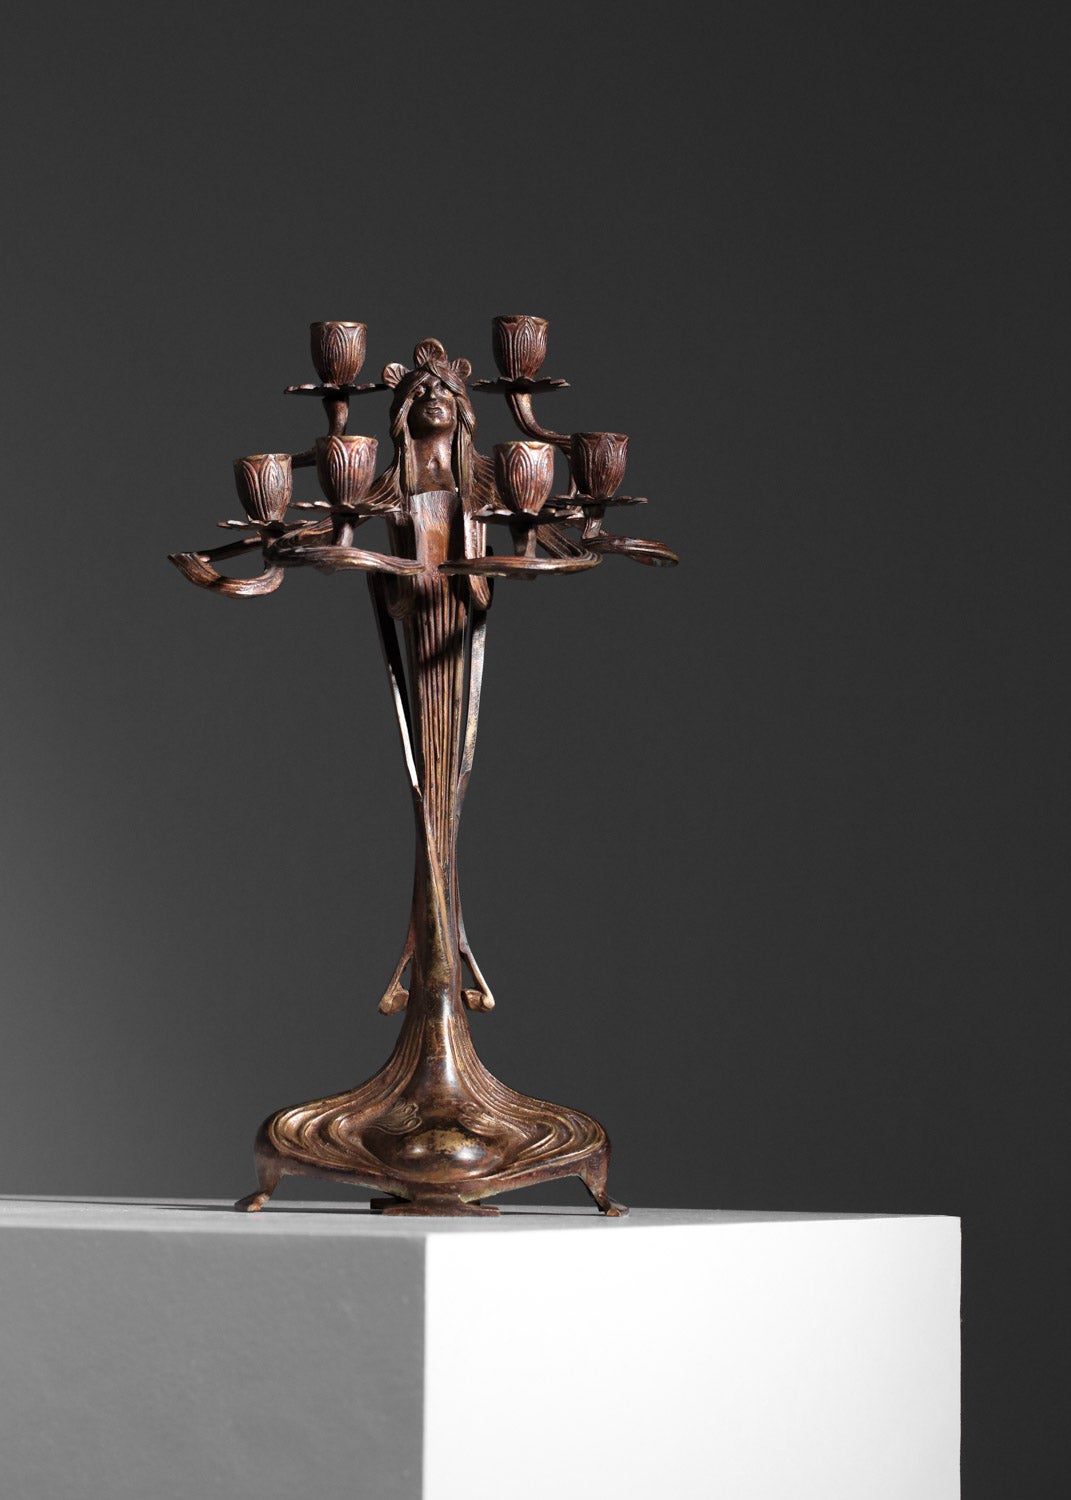 Paire de chandeliers art nouveau des années 1920 de la manufacture autrichienne Urania Imperial Zinn. Les deux candélabres sont en bronze massif patiné représentant une femme avec six Branch au bout desquelles des fleurs de lotus servent de